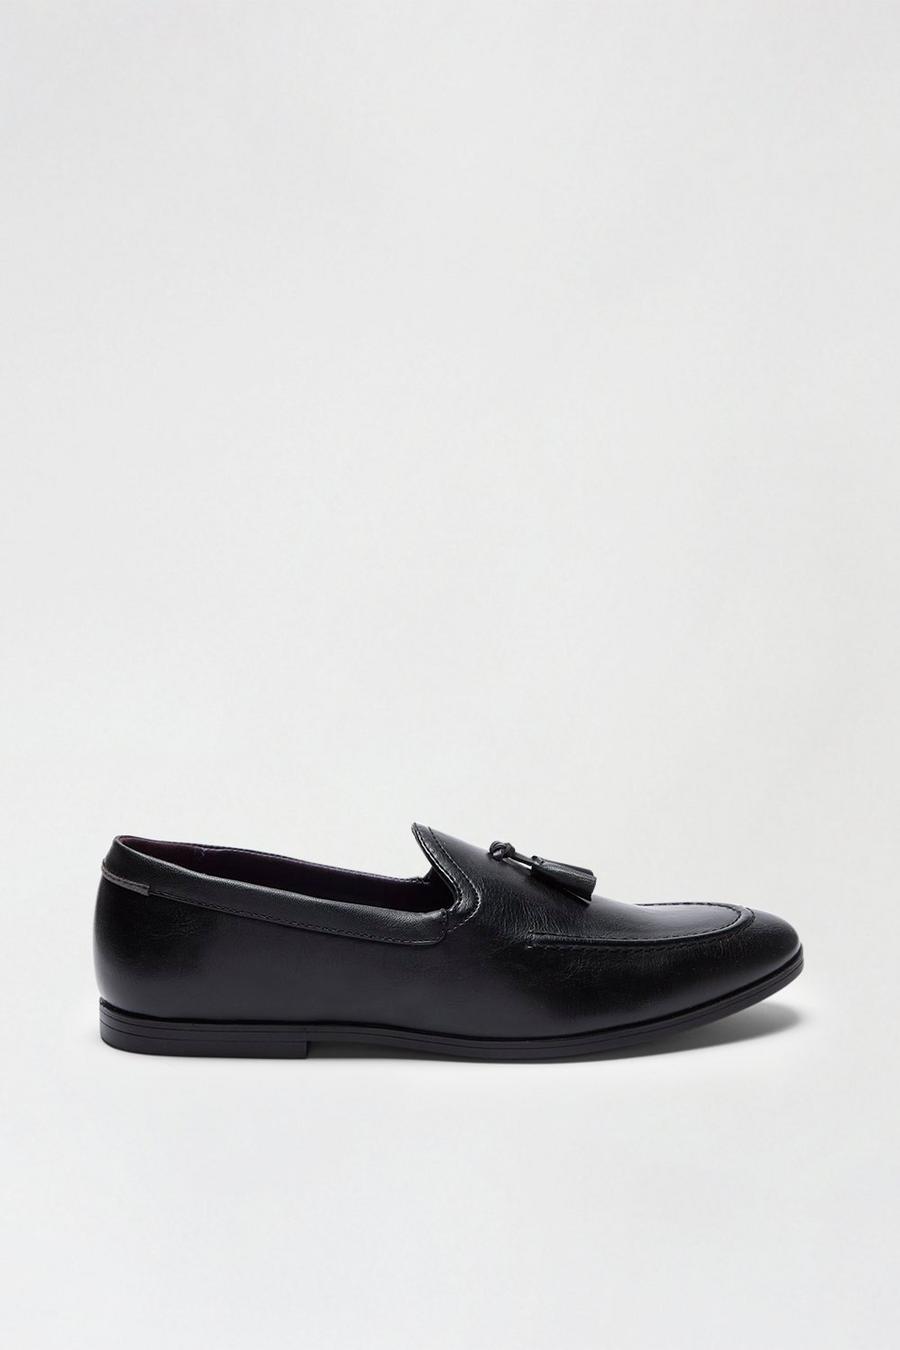 Black Leather Look Tassel Loafers